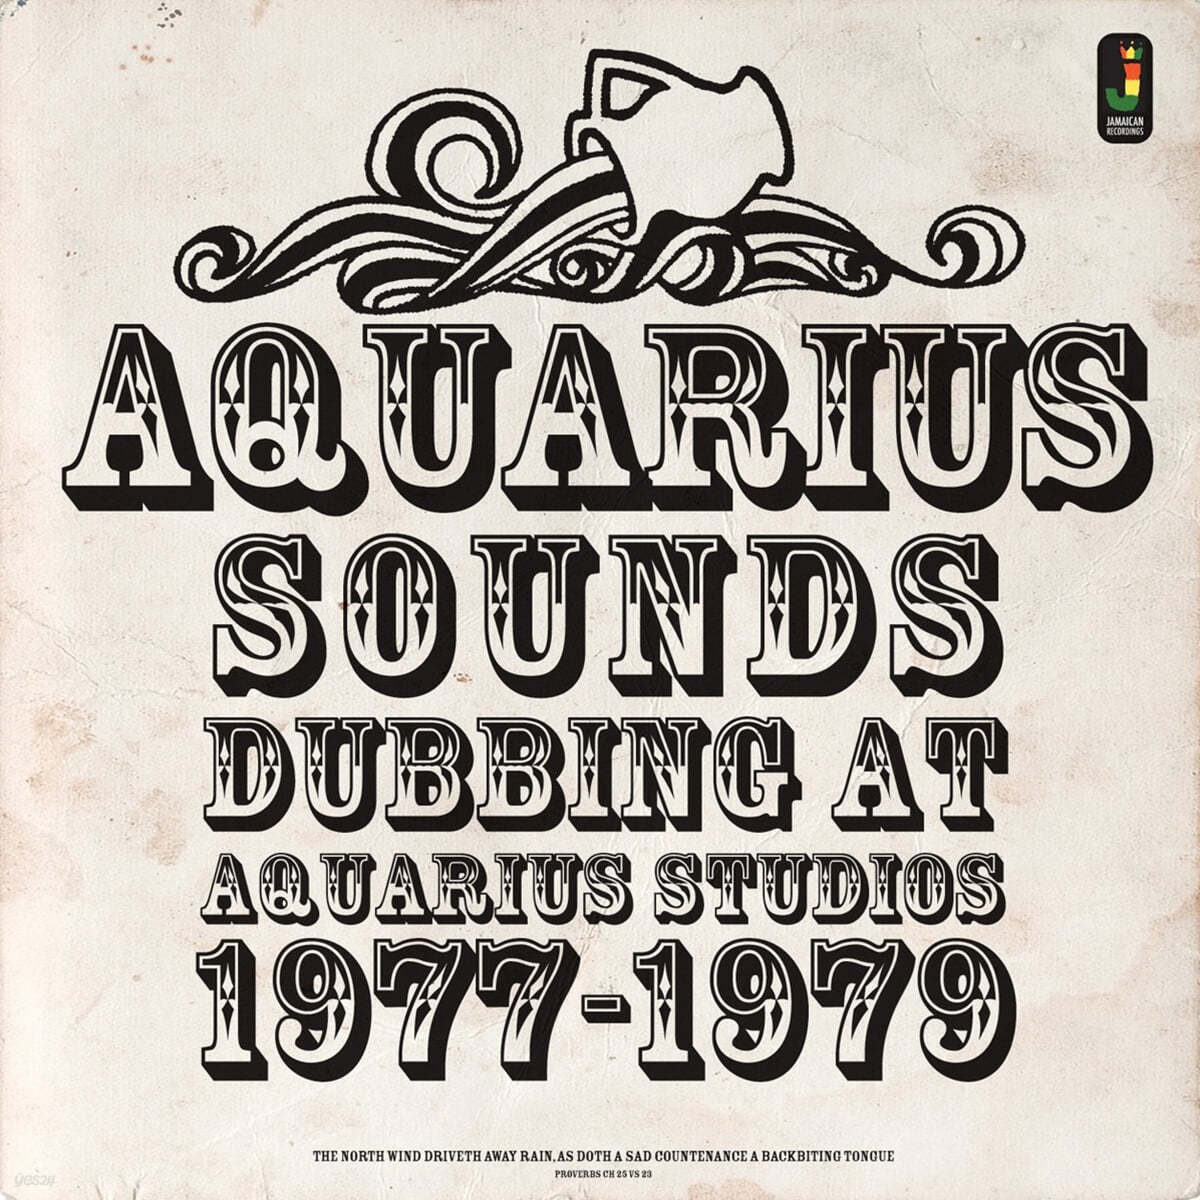 레게 음악 모음 - 아쿠아리우스 사운즈 (Aquarius Sounds) [LP] 